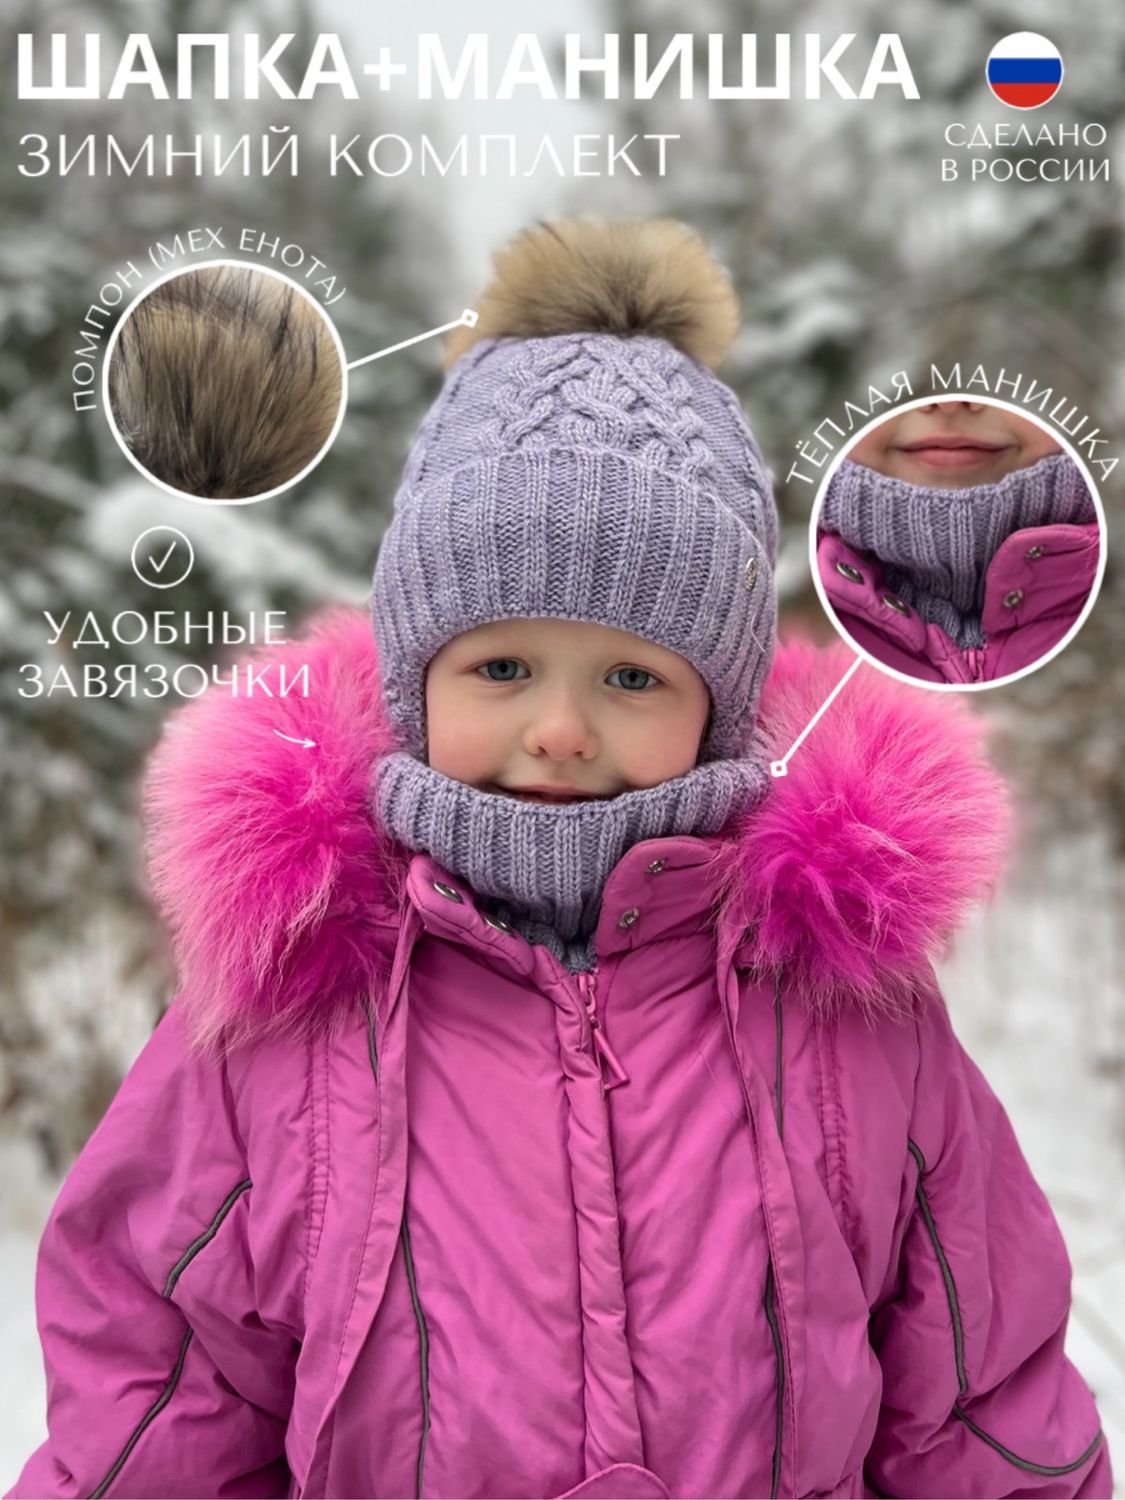 Детские шапочки на зиму | Снежные шапки для маленьких голов - дешевое зимнее снаряжение